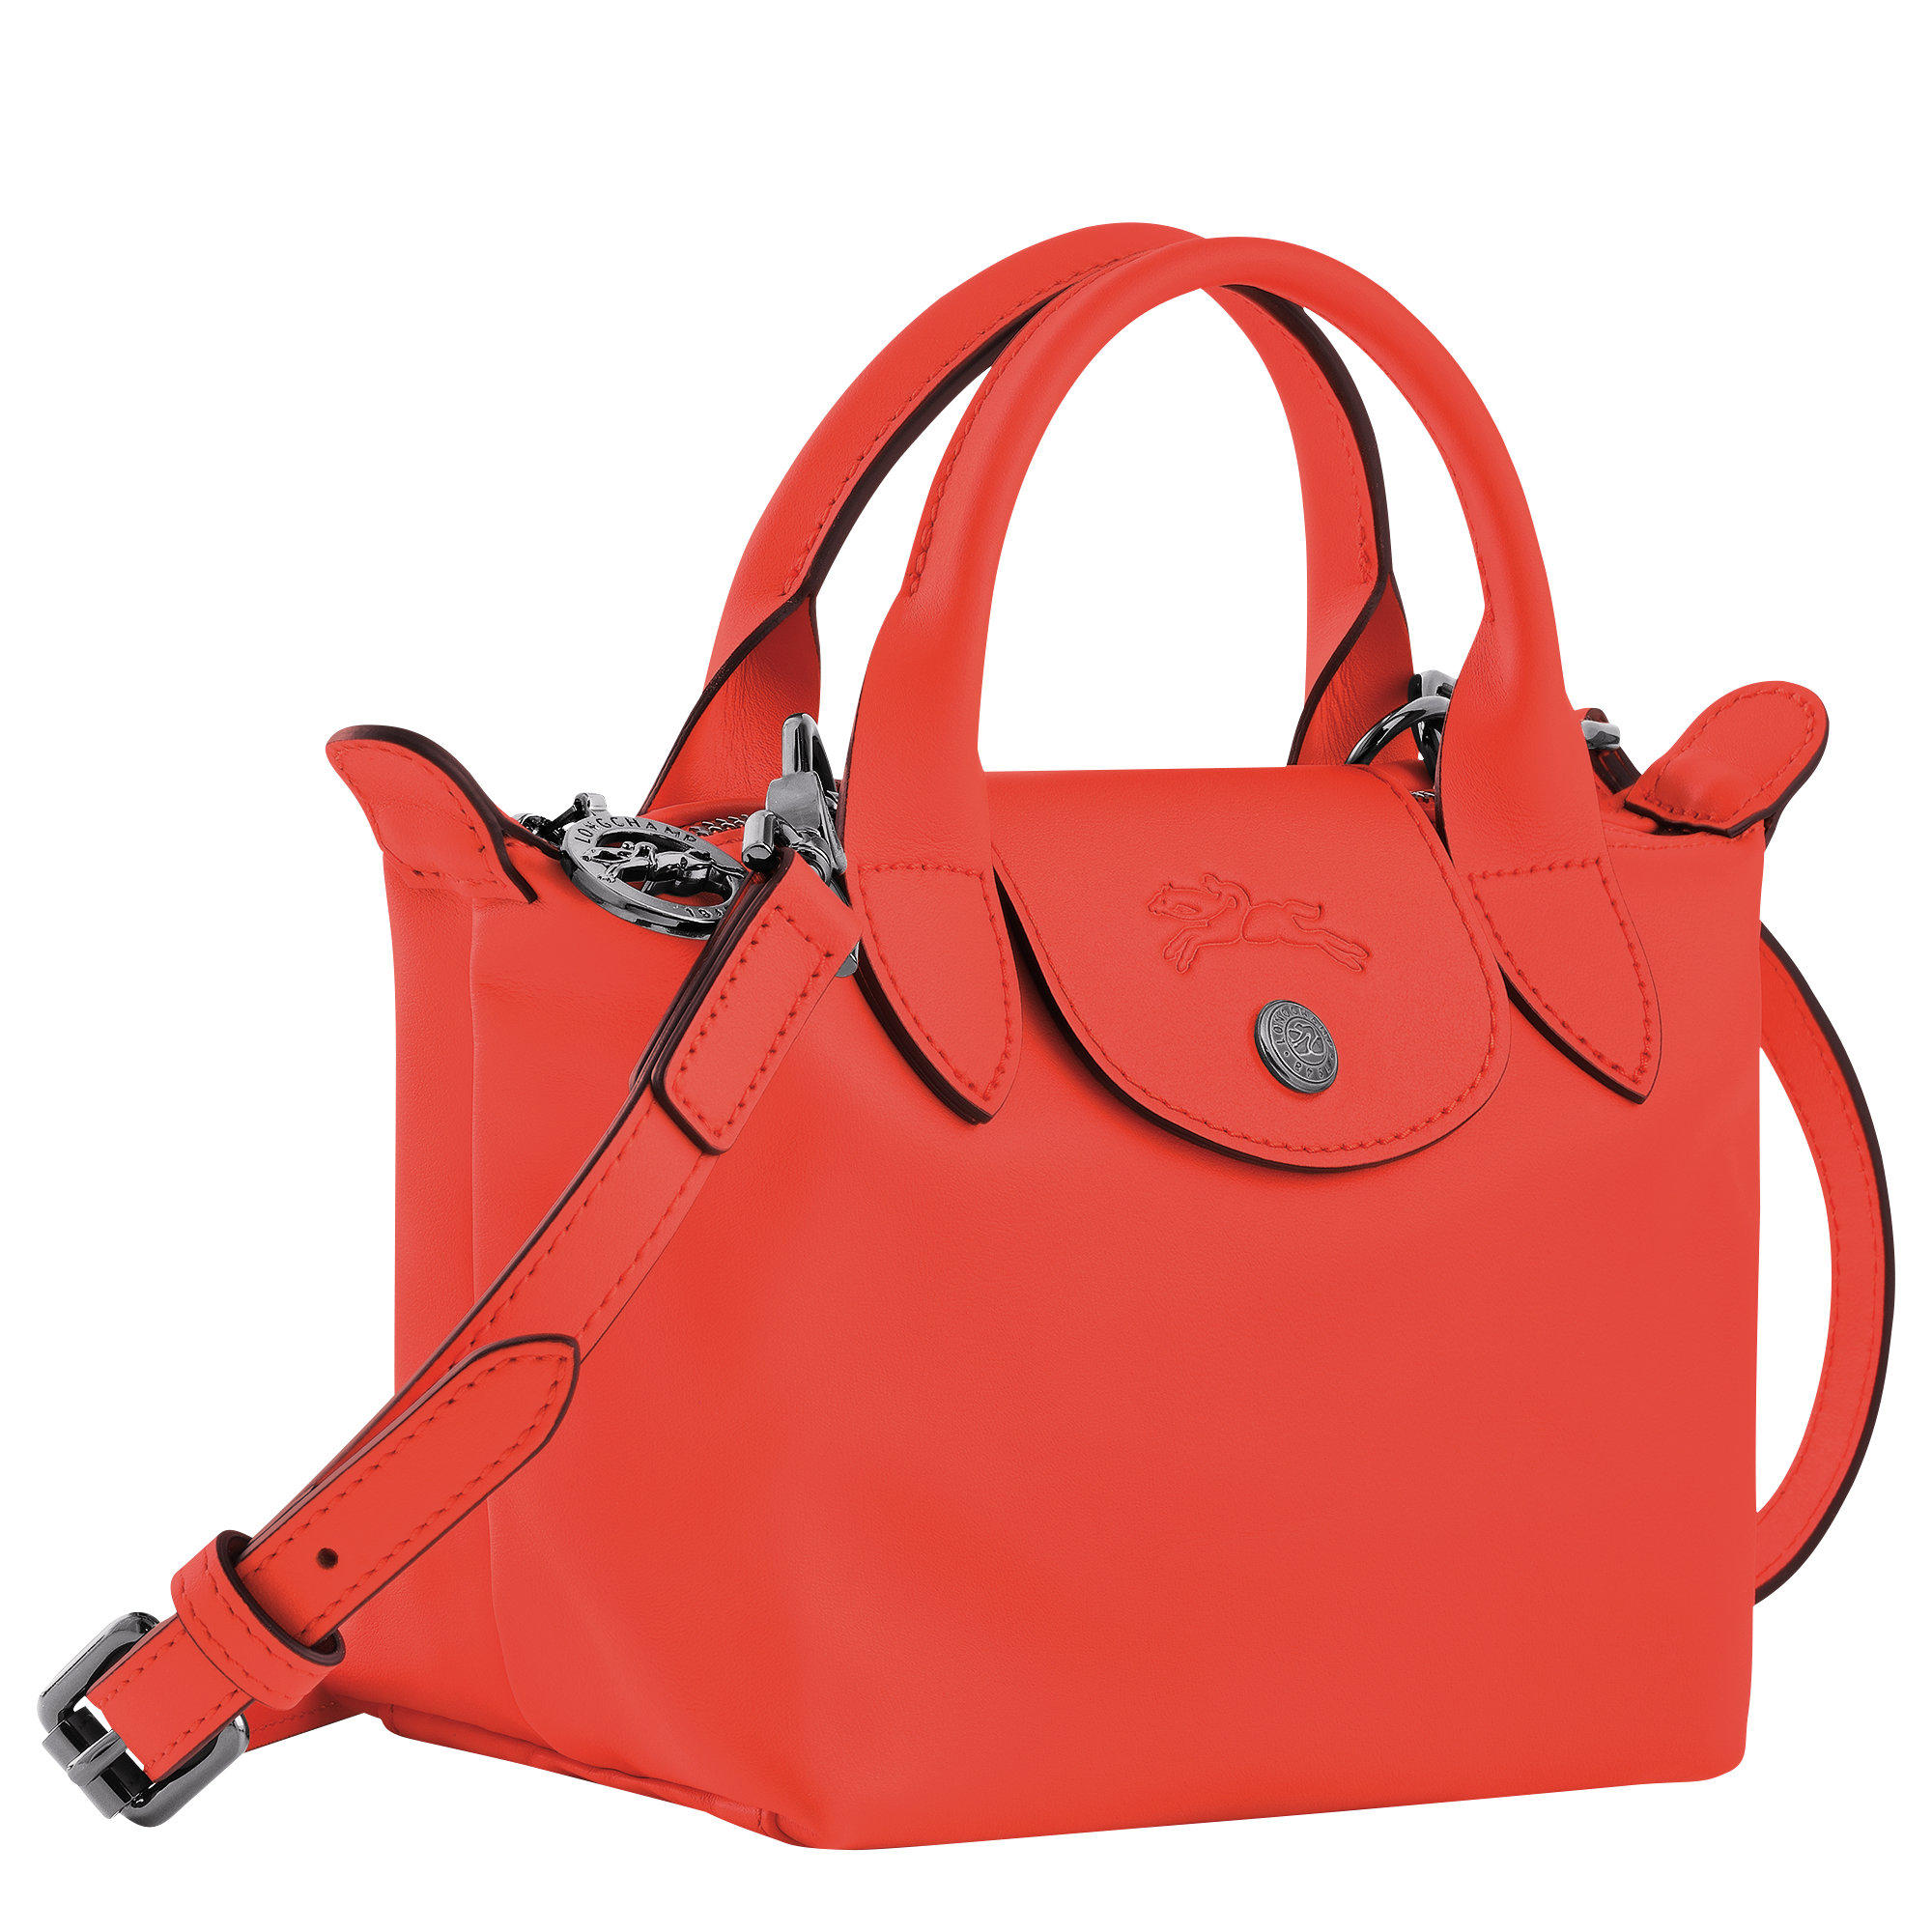 Top handle bag XS Le Pliage Xtra Black (L1500987017)